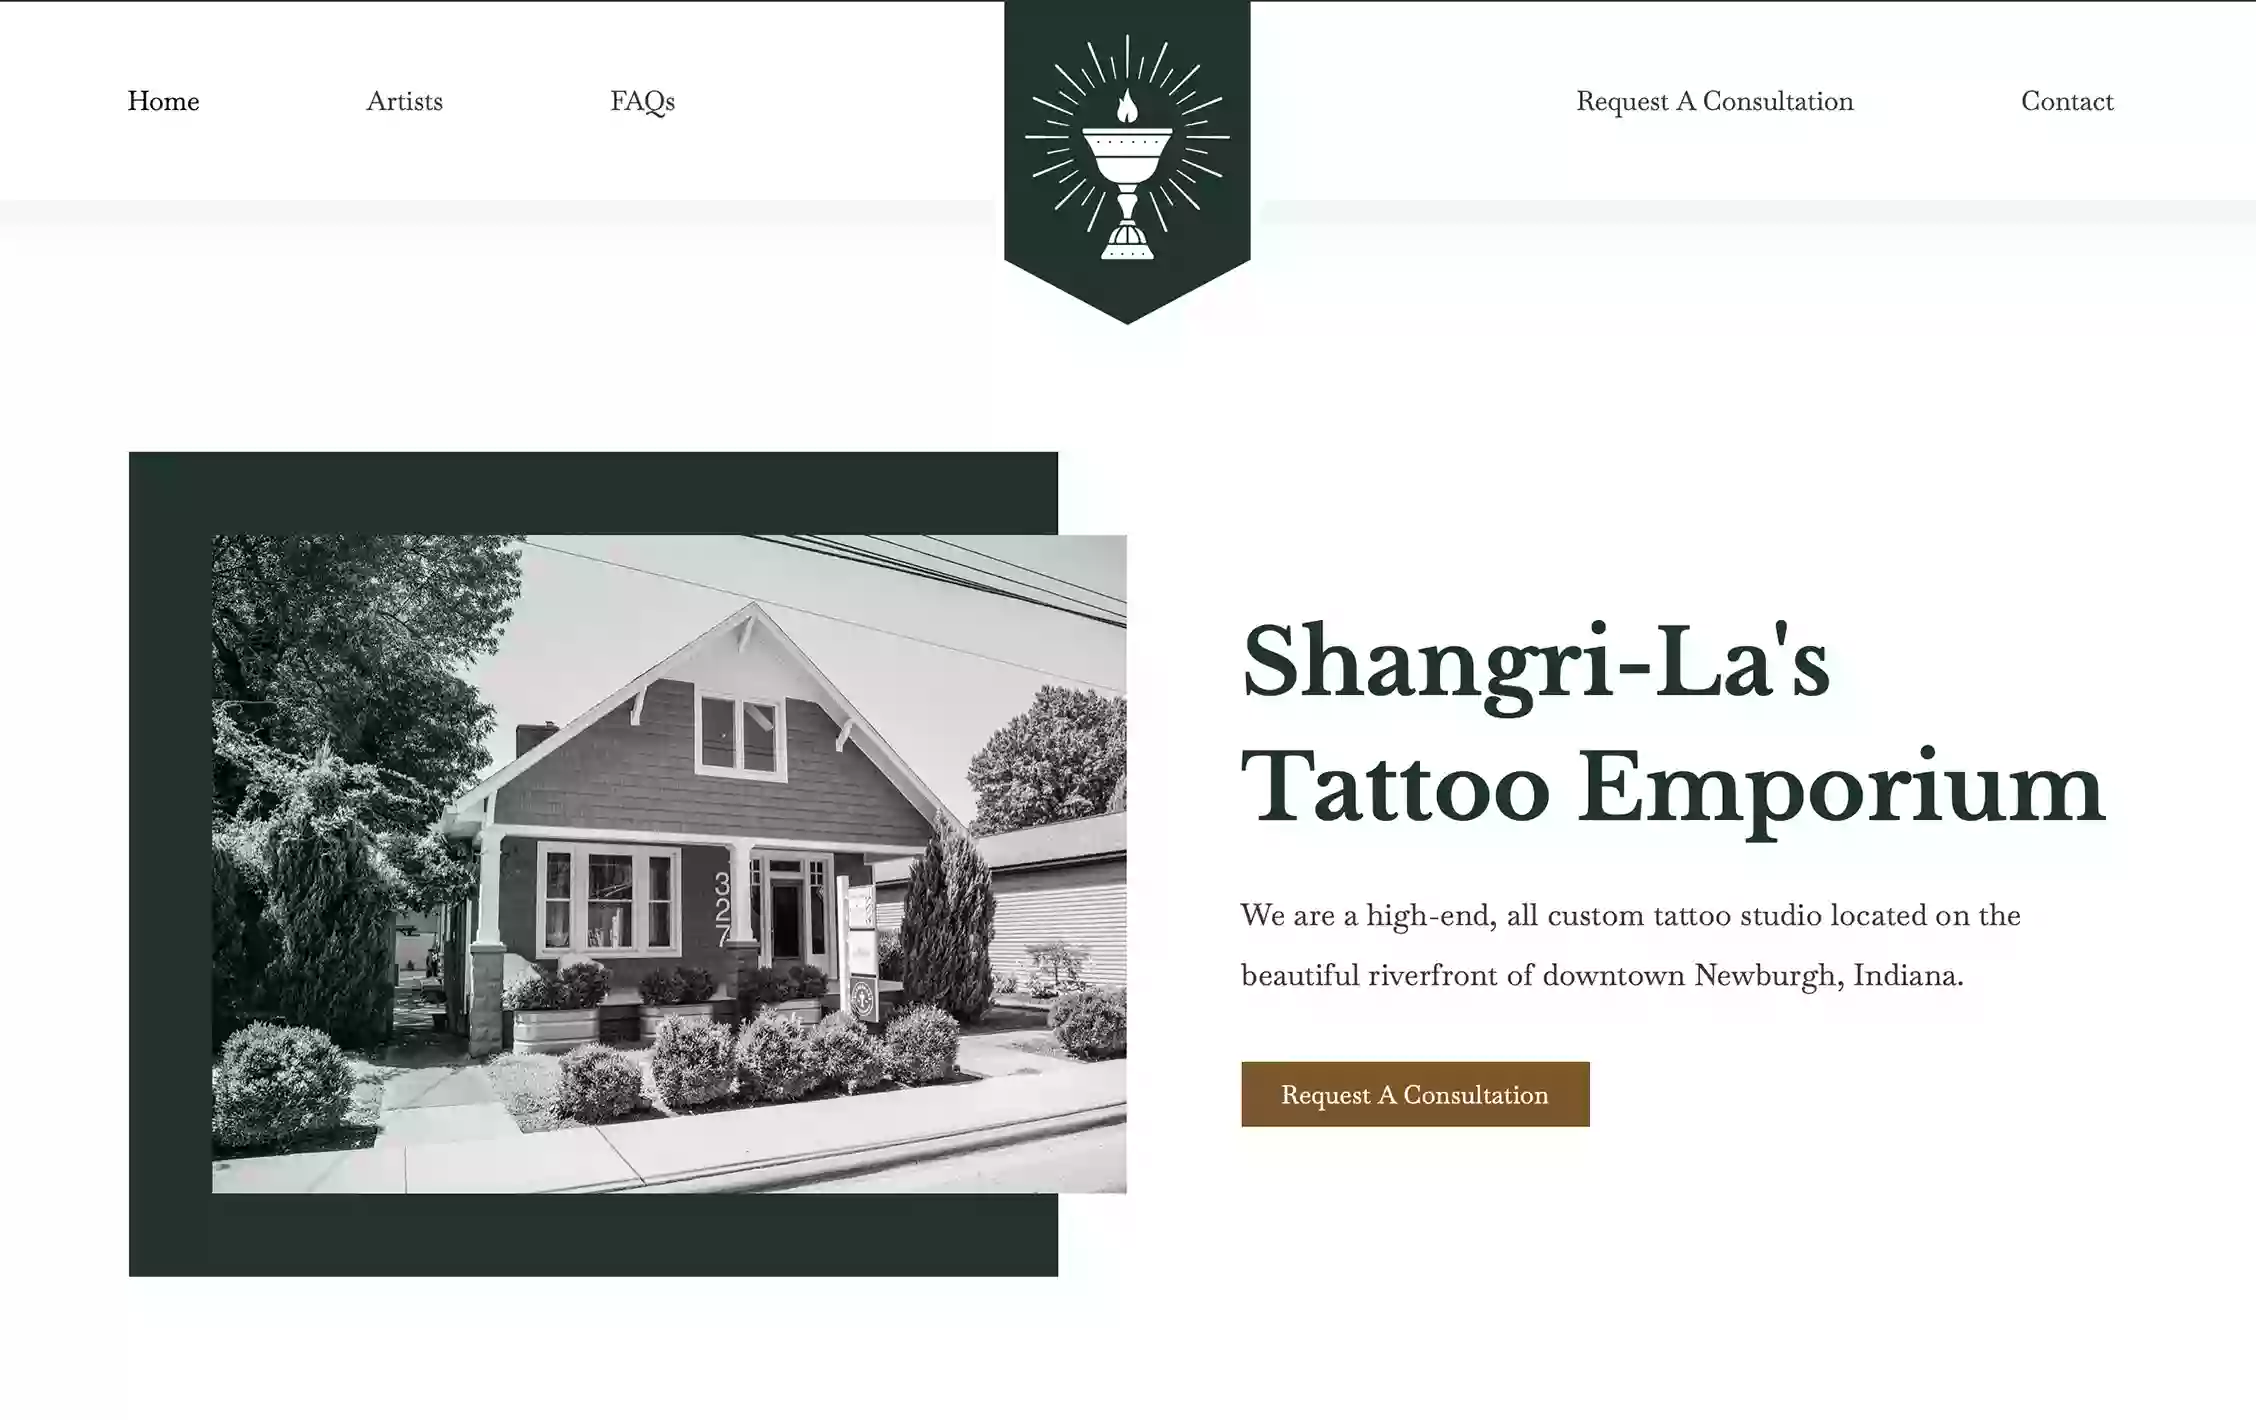 Shangri-La's Tattoo Emporium